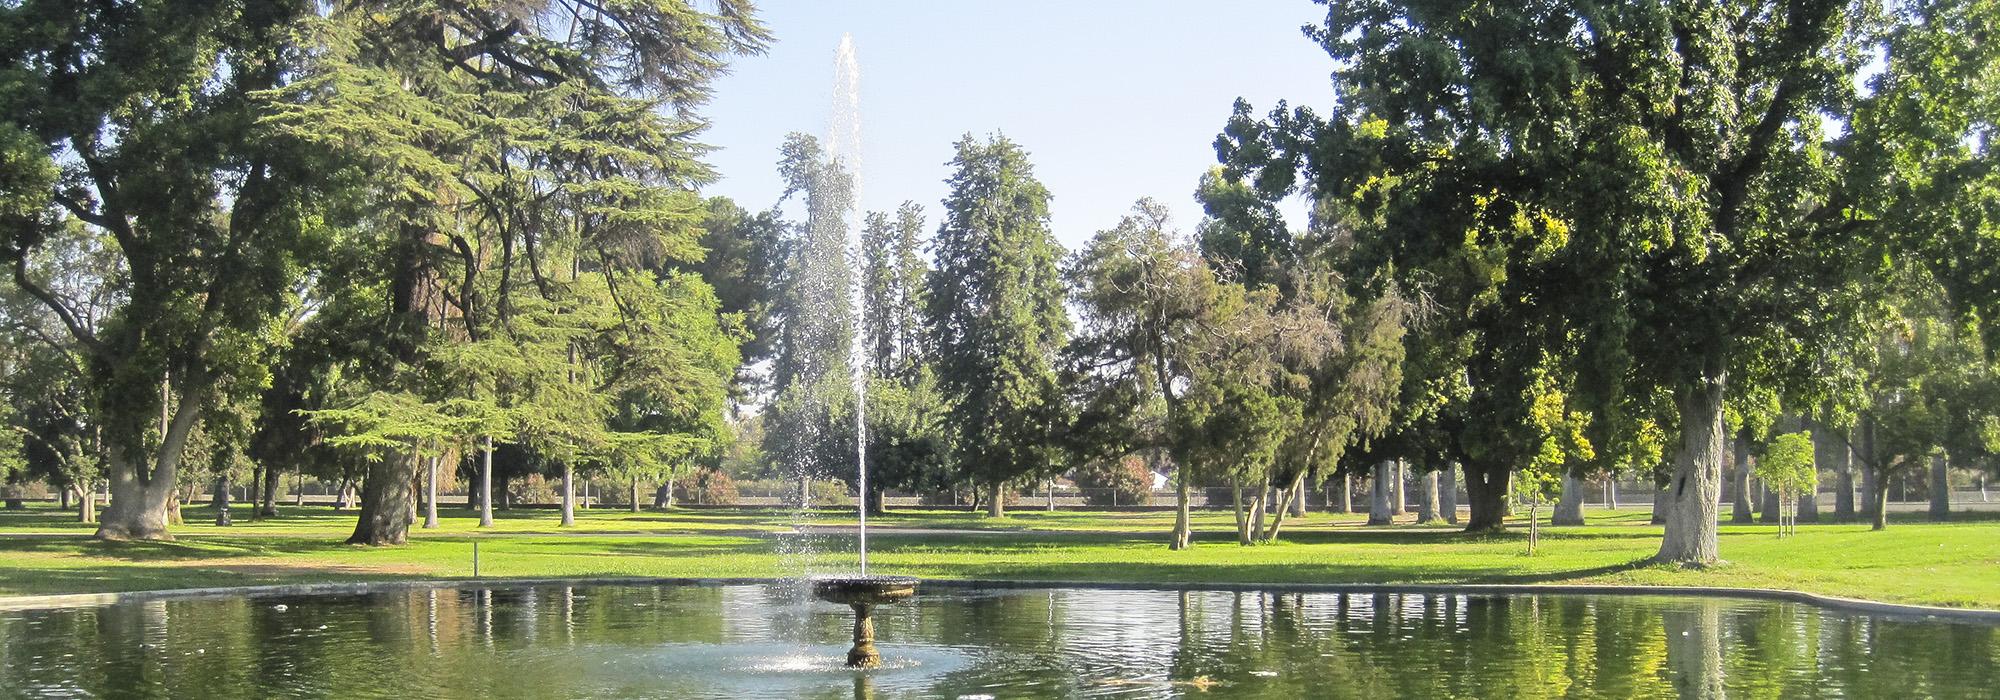 Roeding Park, Fresno, CA